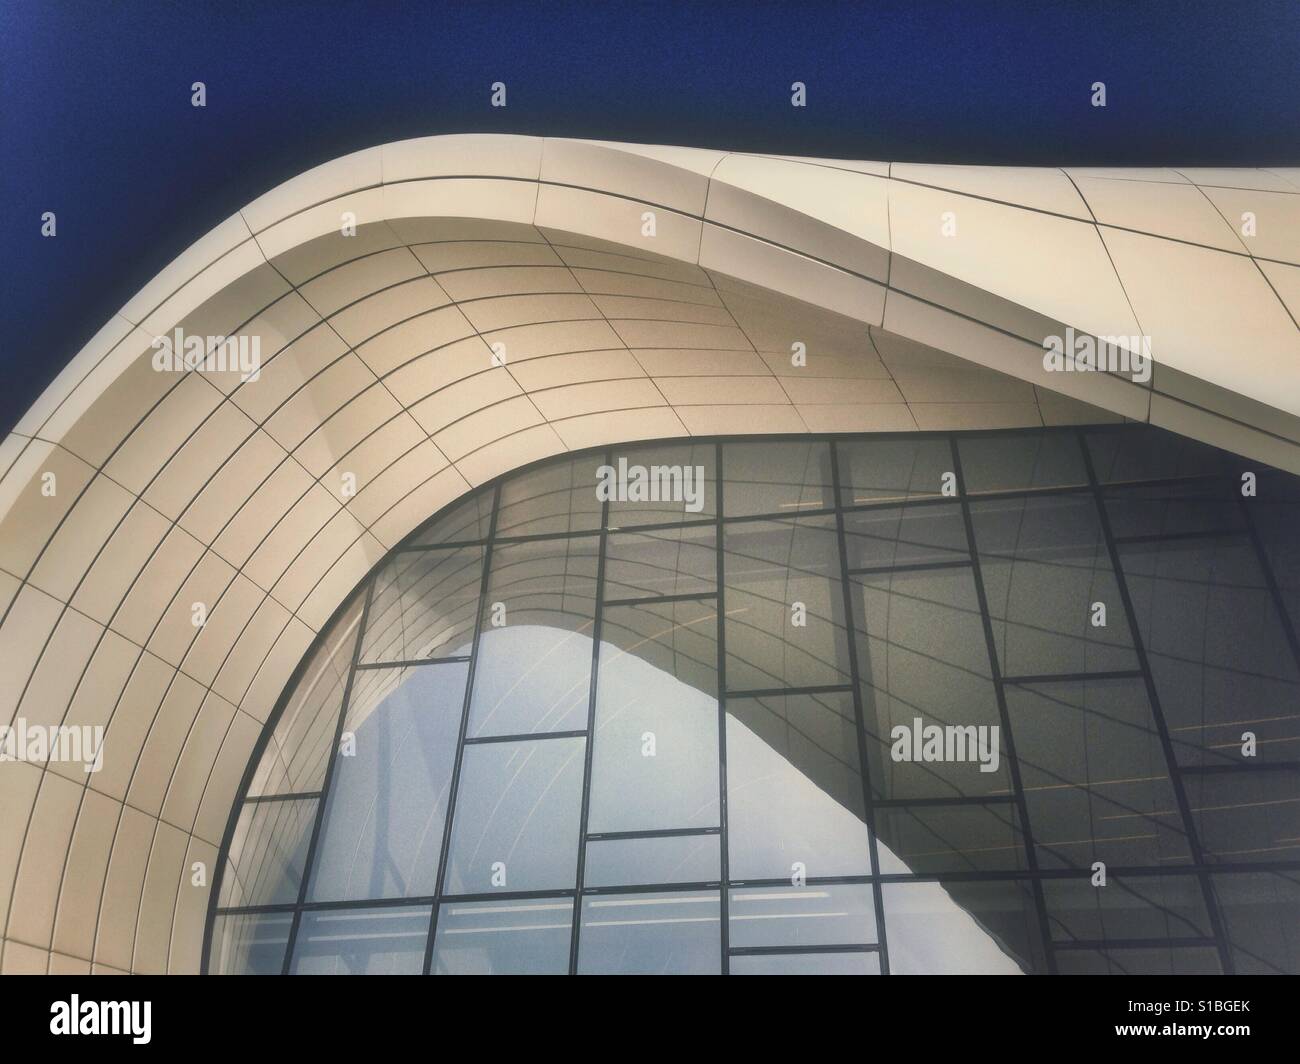 Abstract architecture details by Zaha Hadid in Baku, Azerbaijan Stock Photo